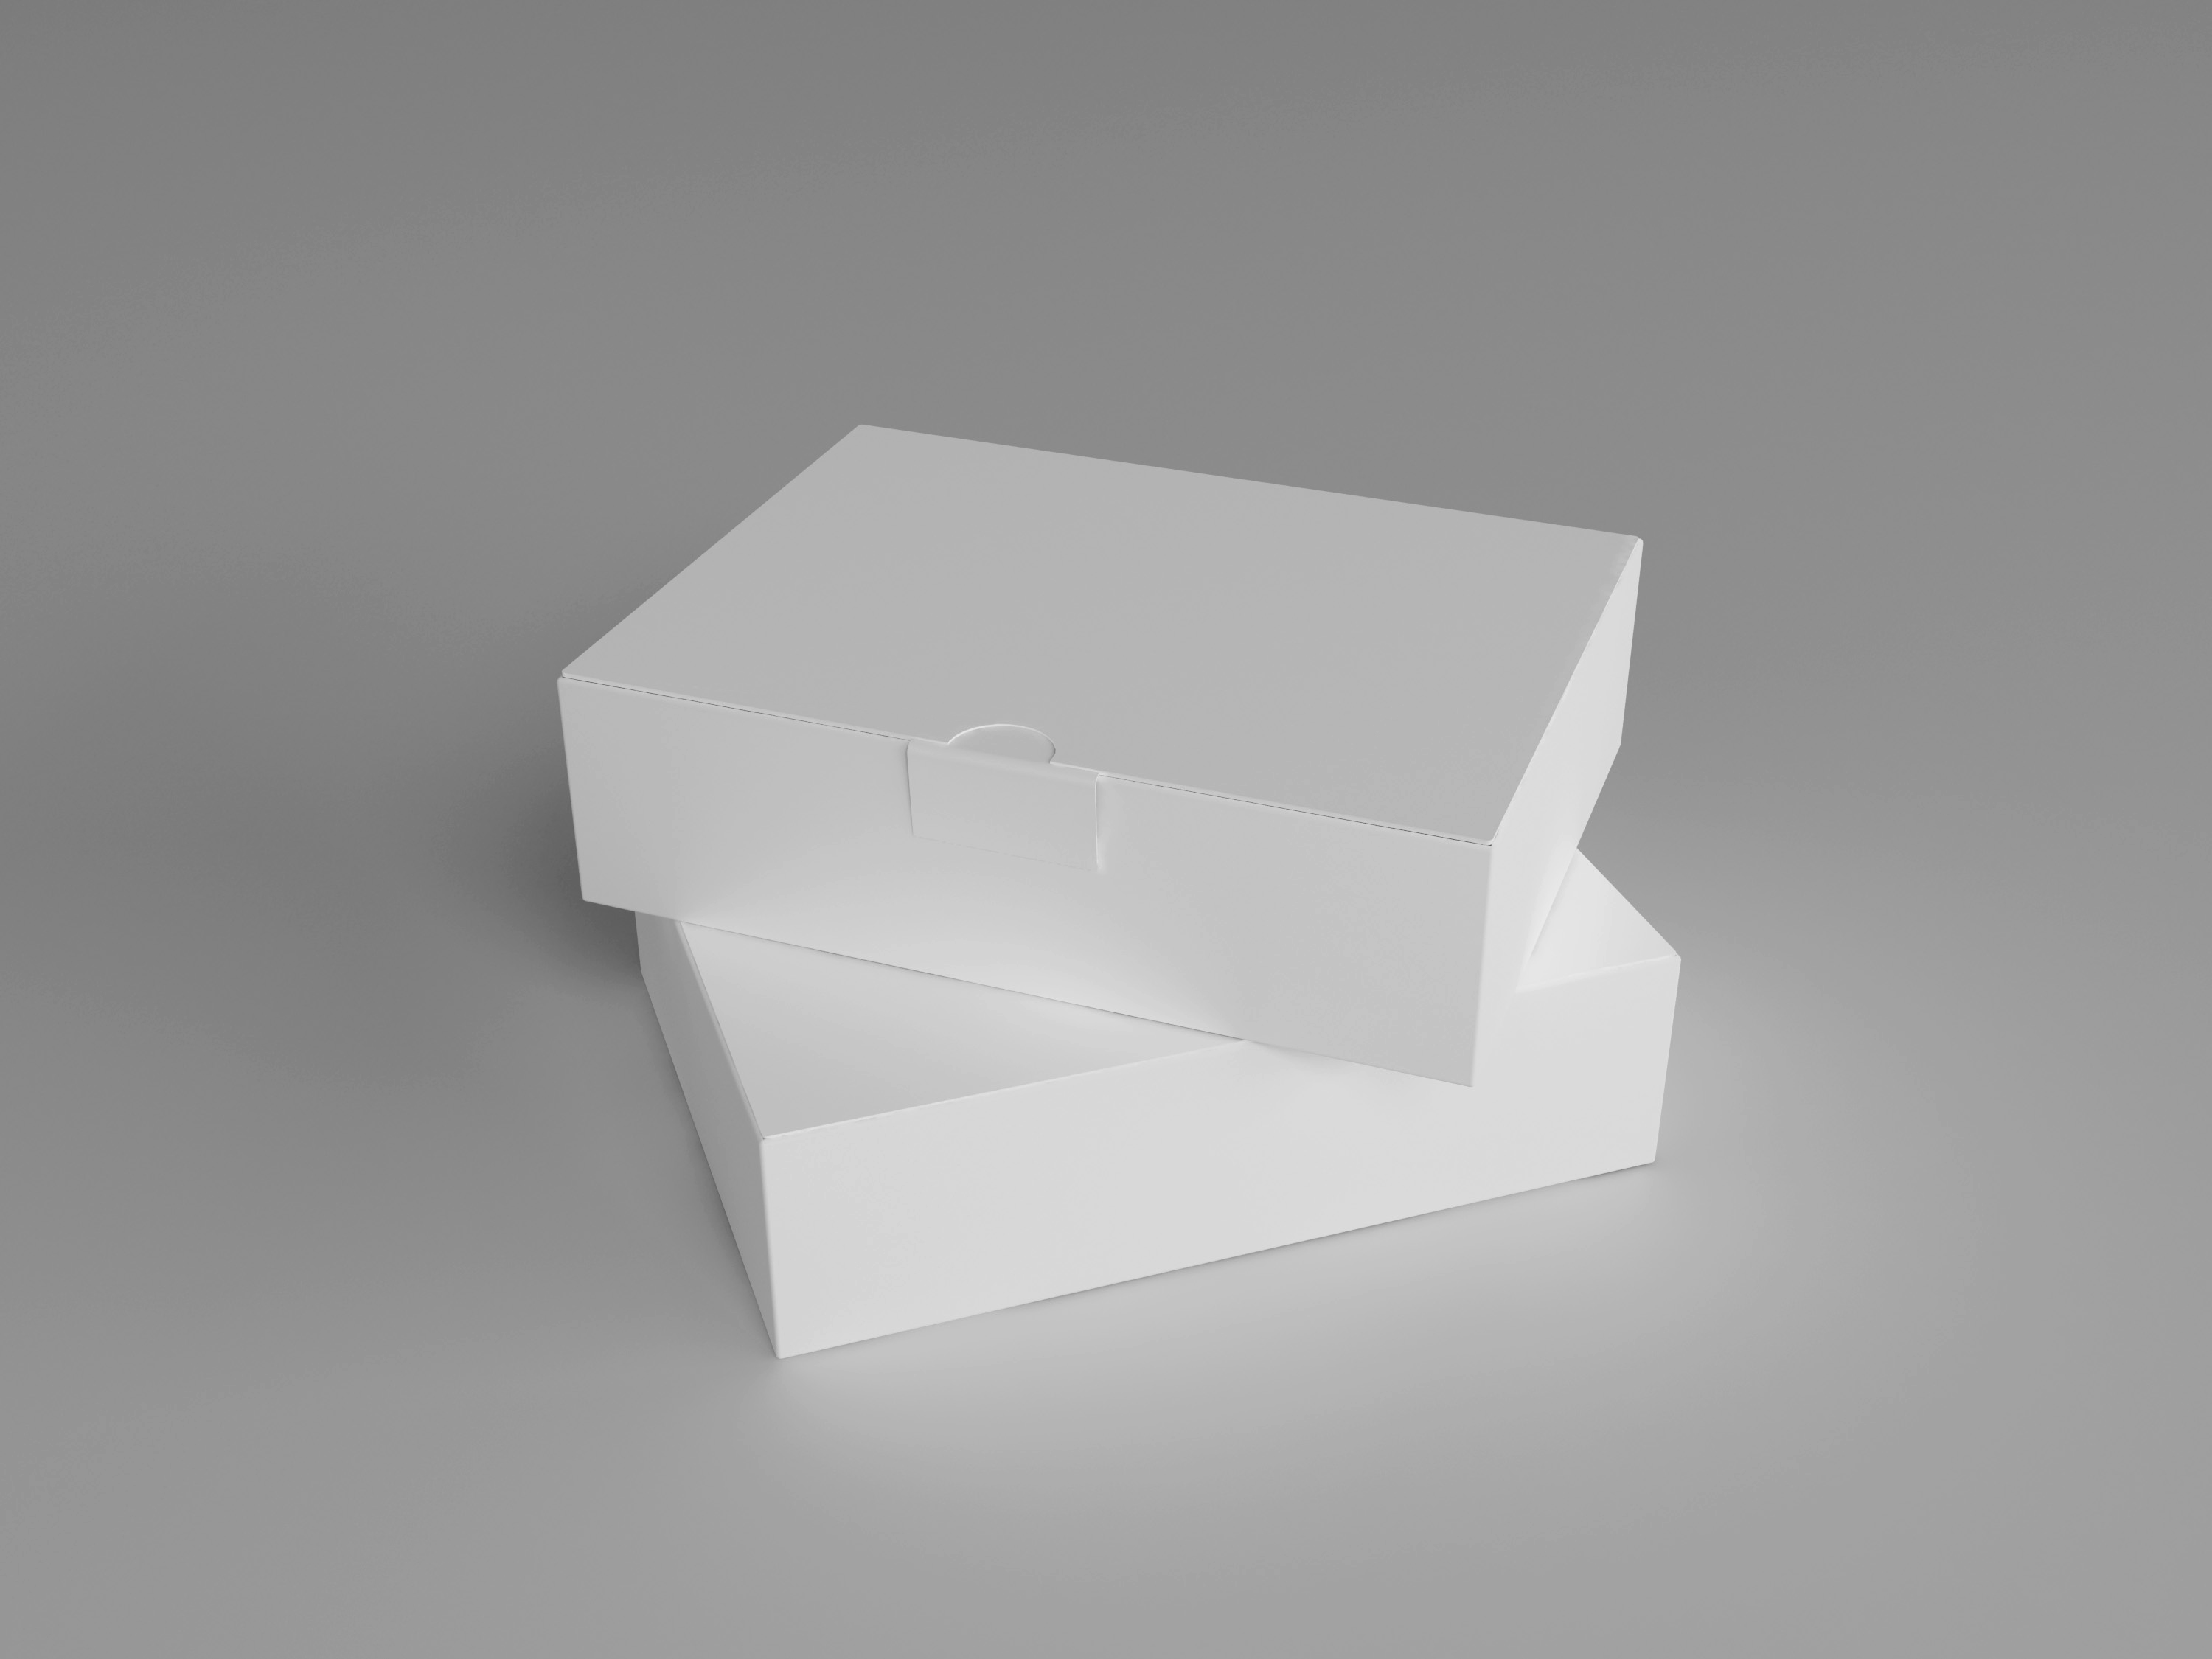 高品质高端的礼品盒纸盒PSD样机模板 Package Box